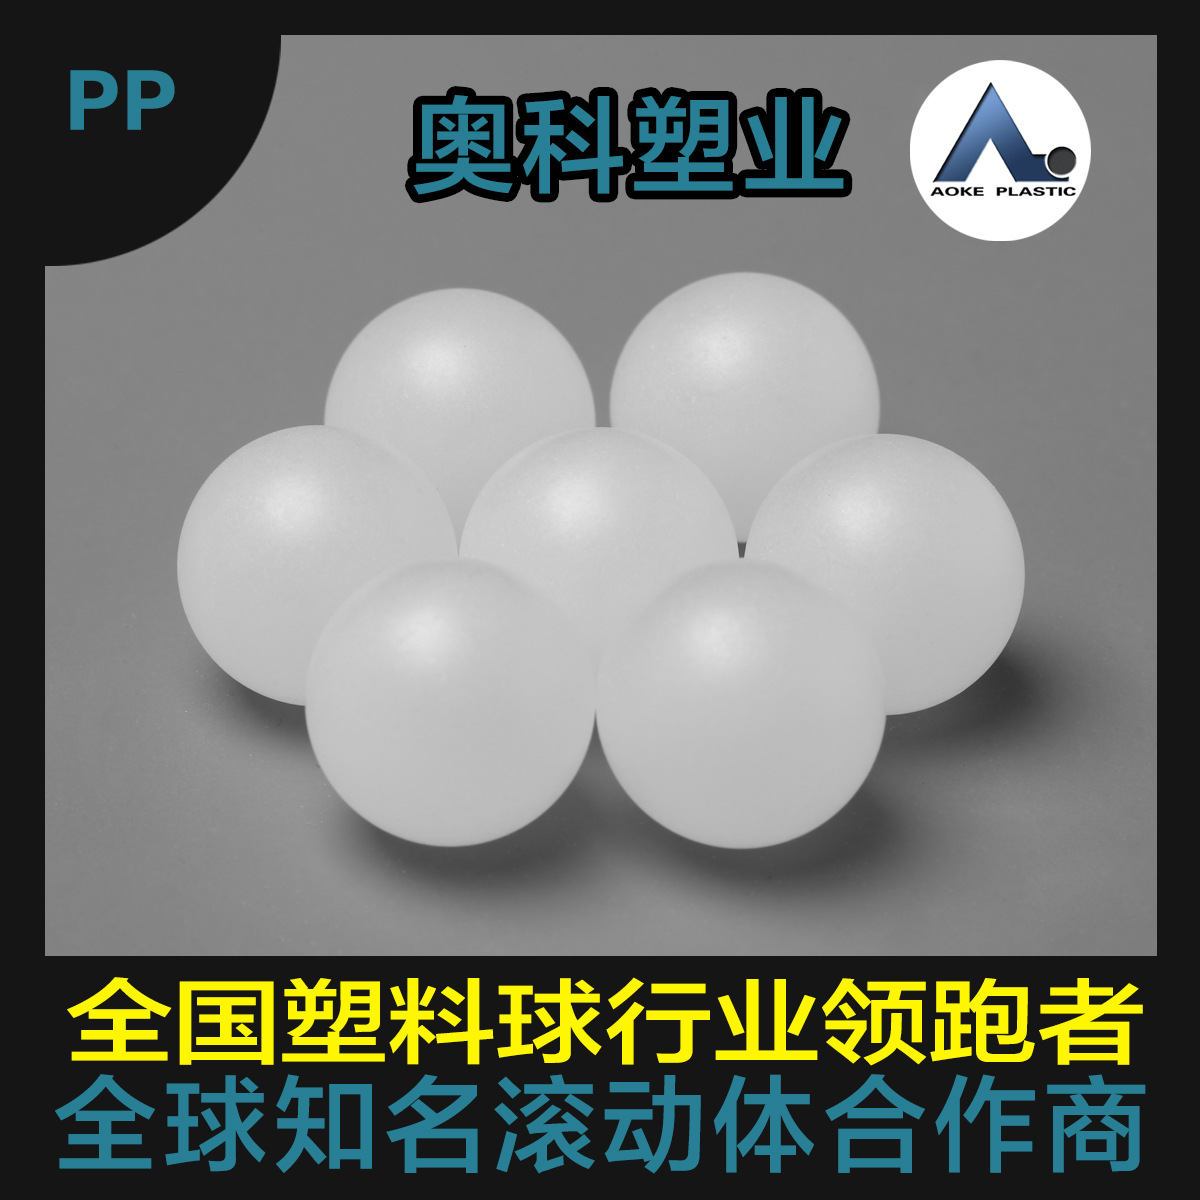 医药瓶用专用塑料球 PP25mm空心球 环保塑料球 圆球